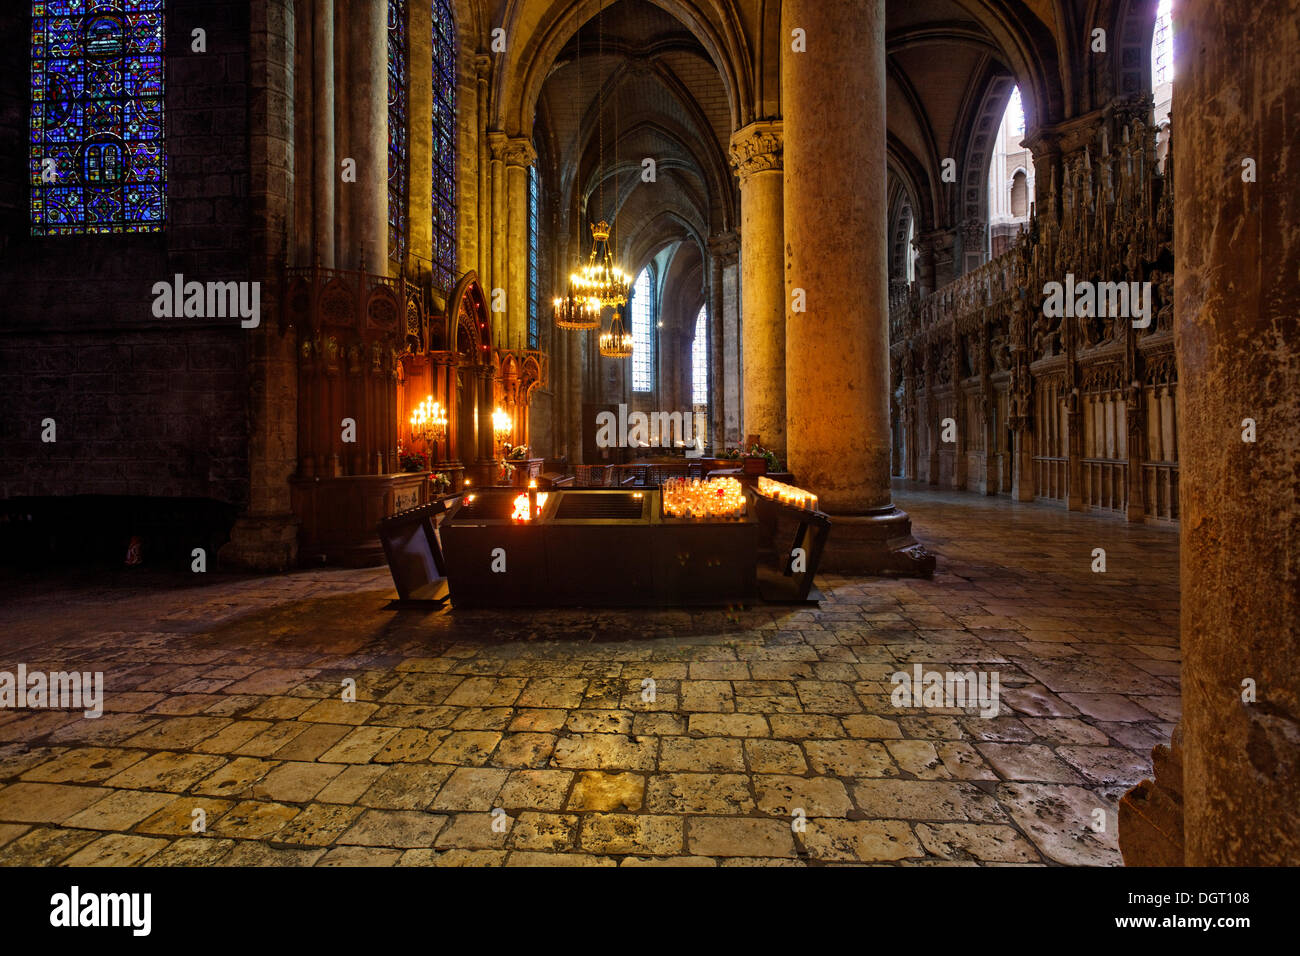 La cathédrale de Chartres, Notre Dame du pilier, bougies, Chartres, région Ile de France, France, Europe Banque D'Images